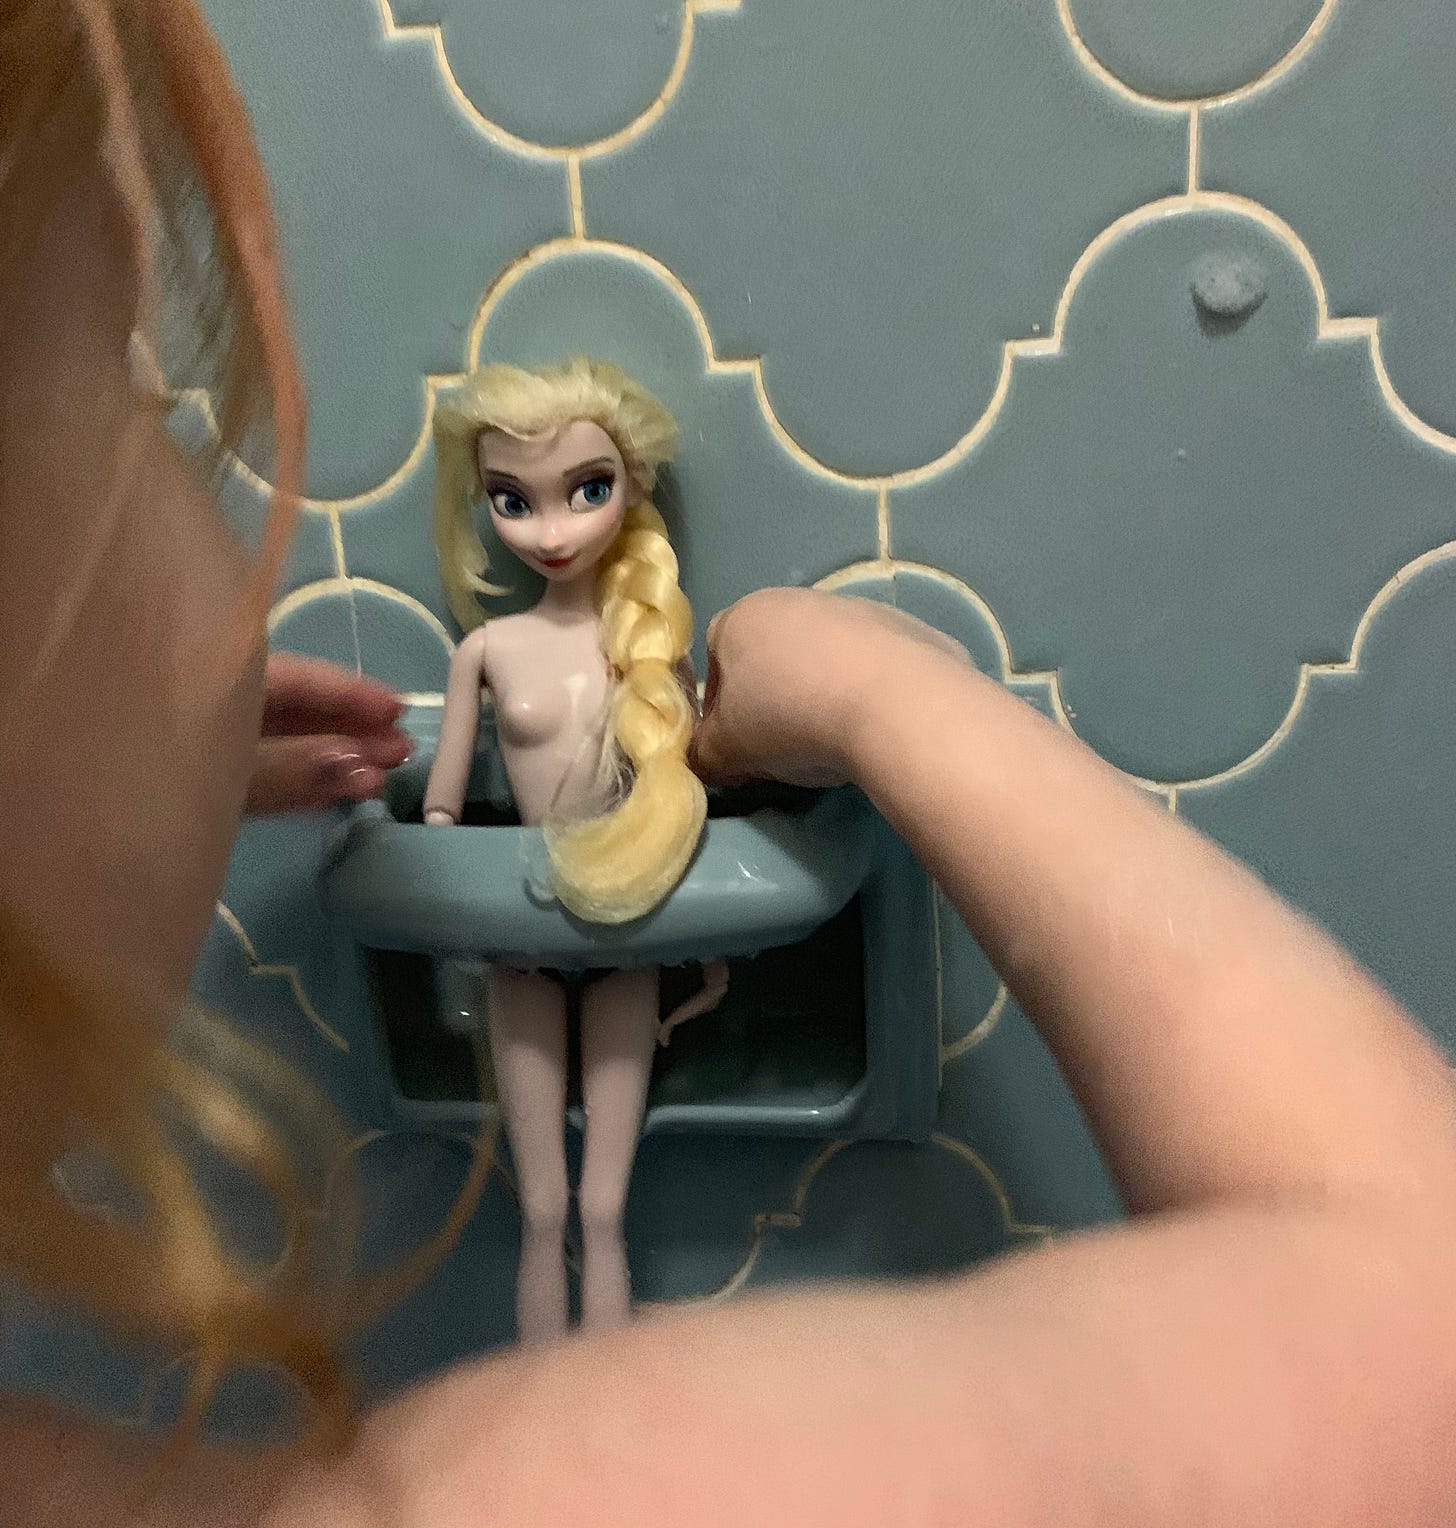 Elsa in bathrub soap holder